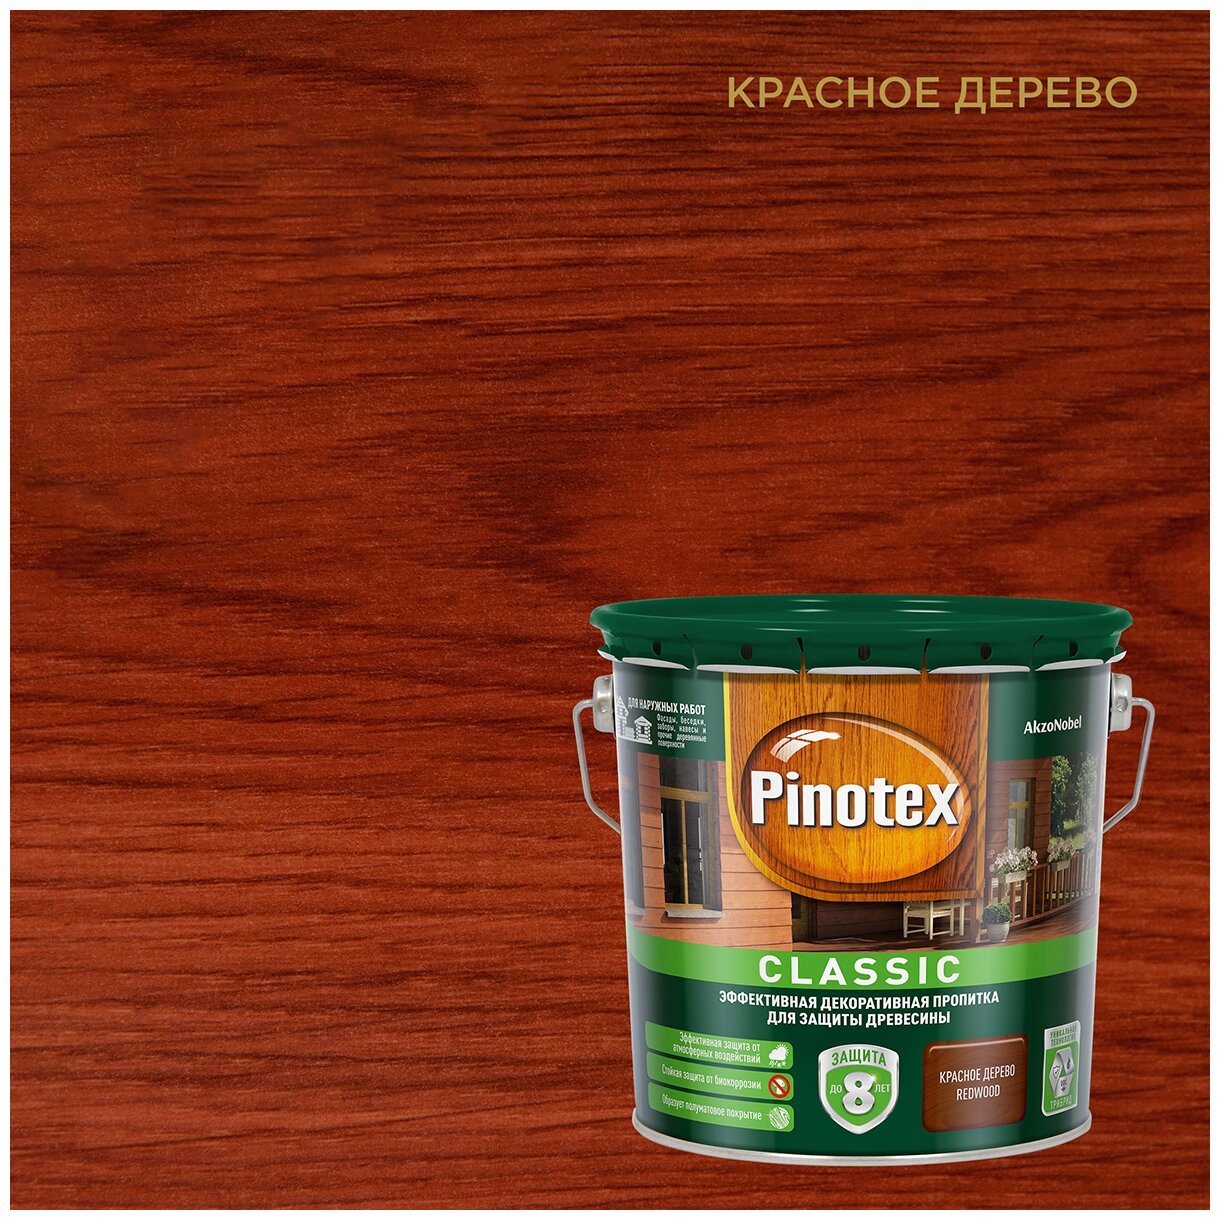   Pinotex Classic   2.7 